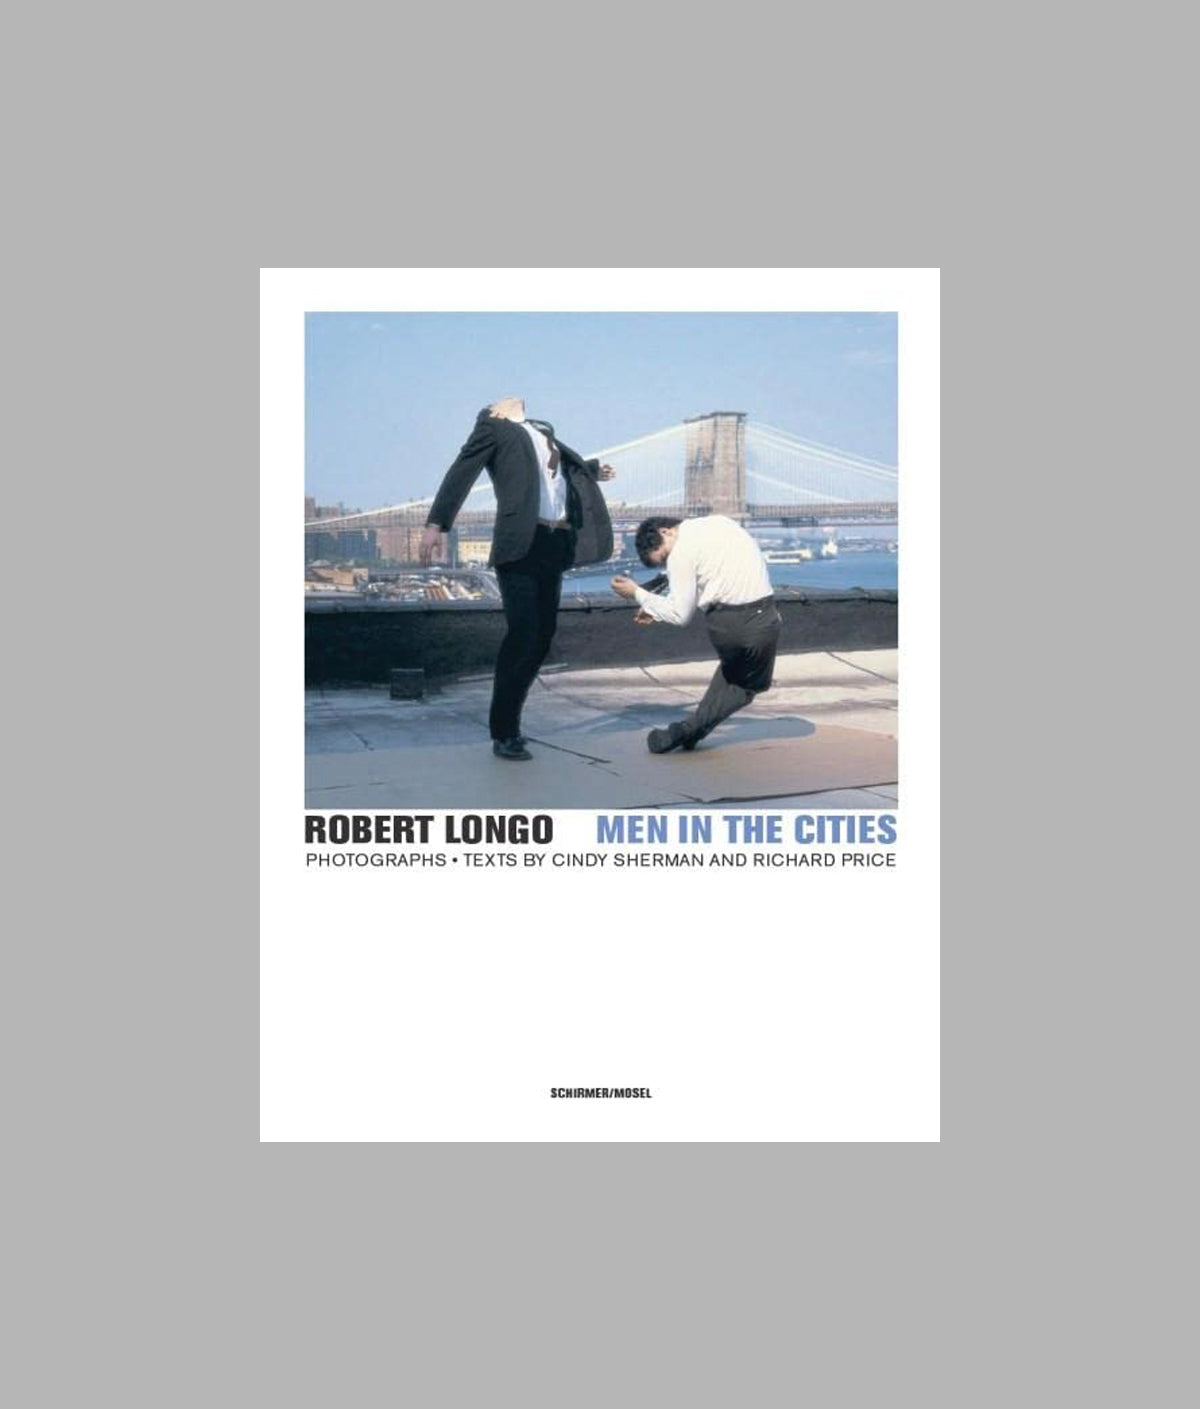 Robert Longo: Men in the Cities